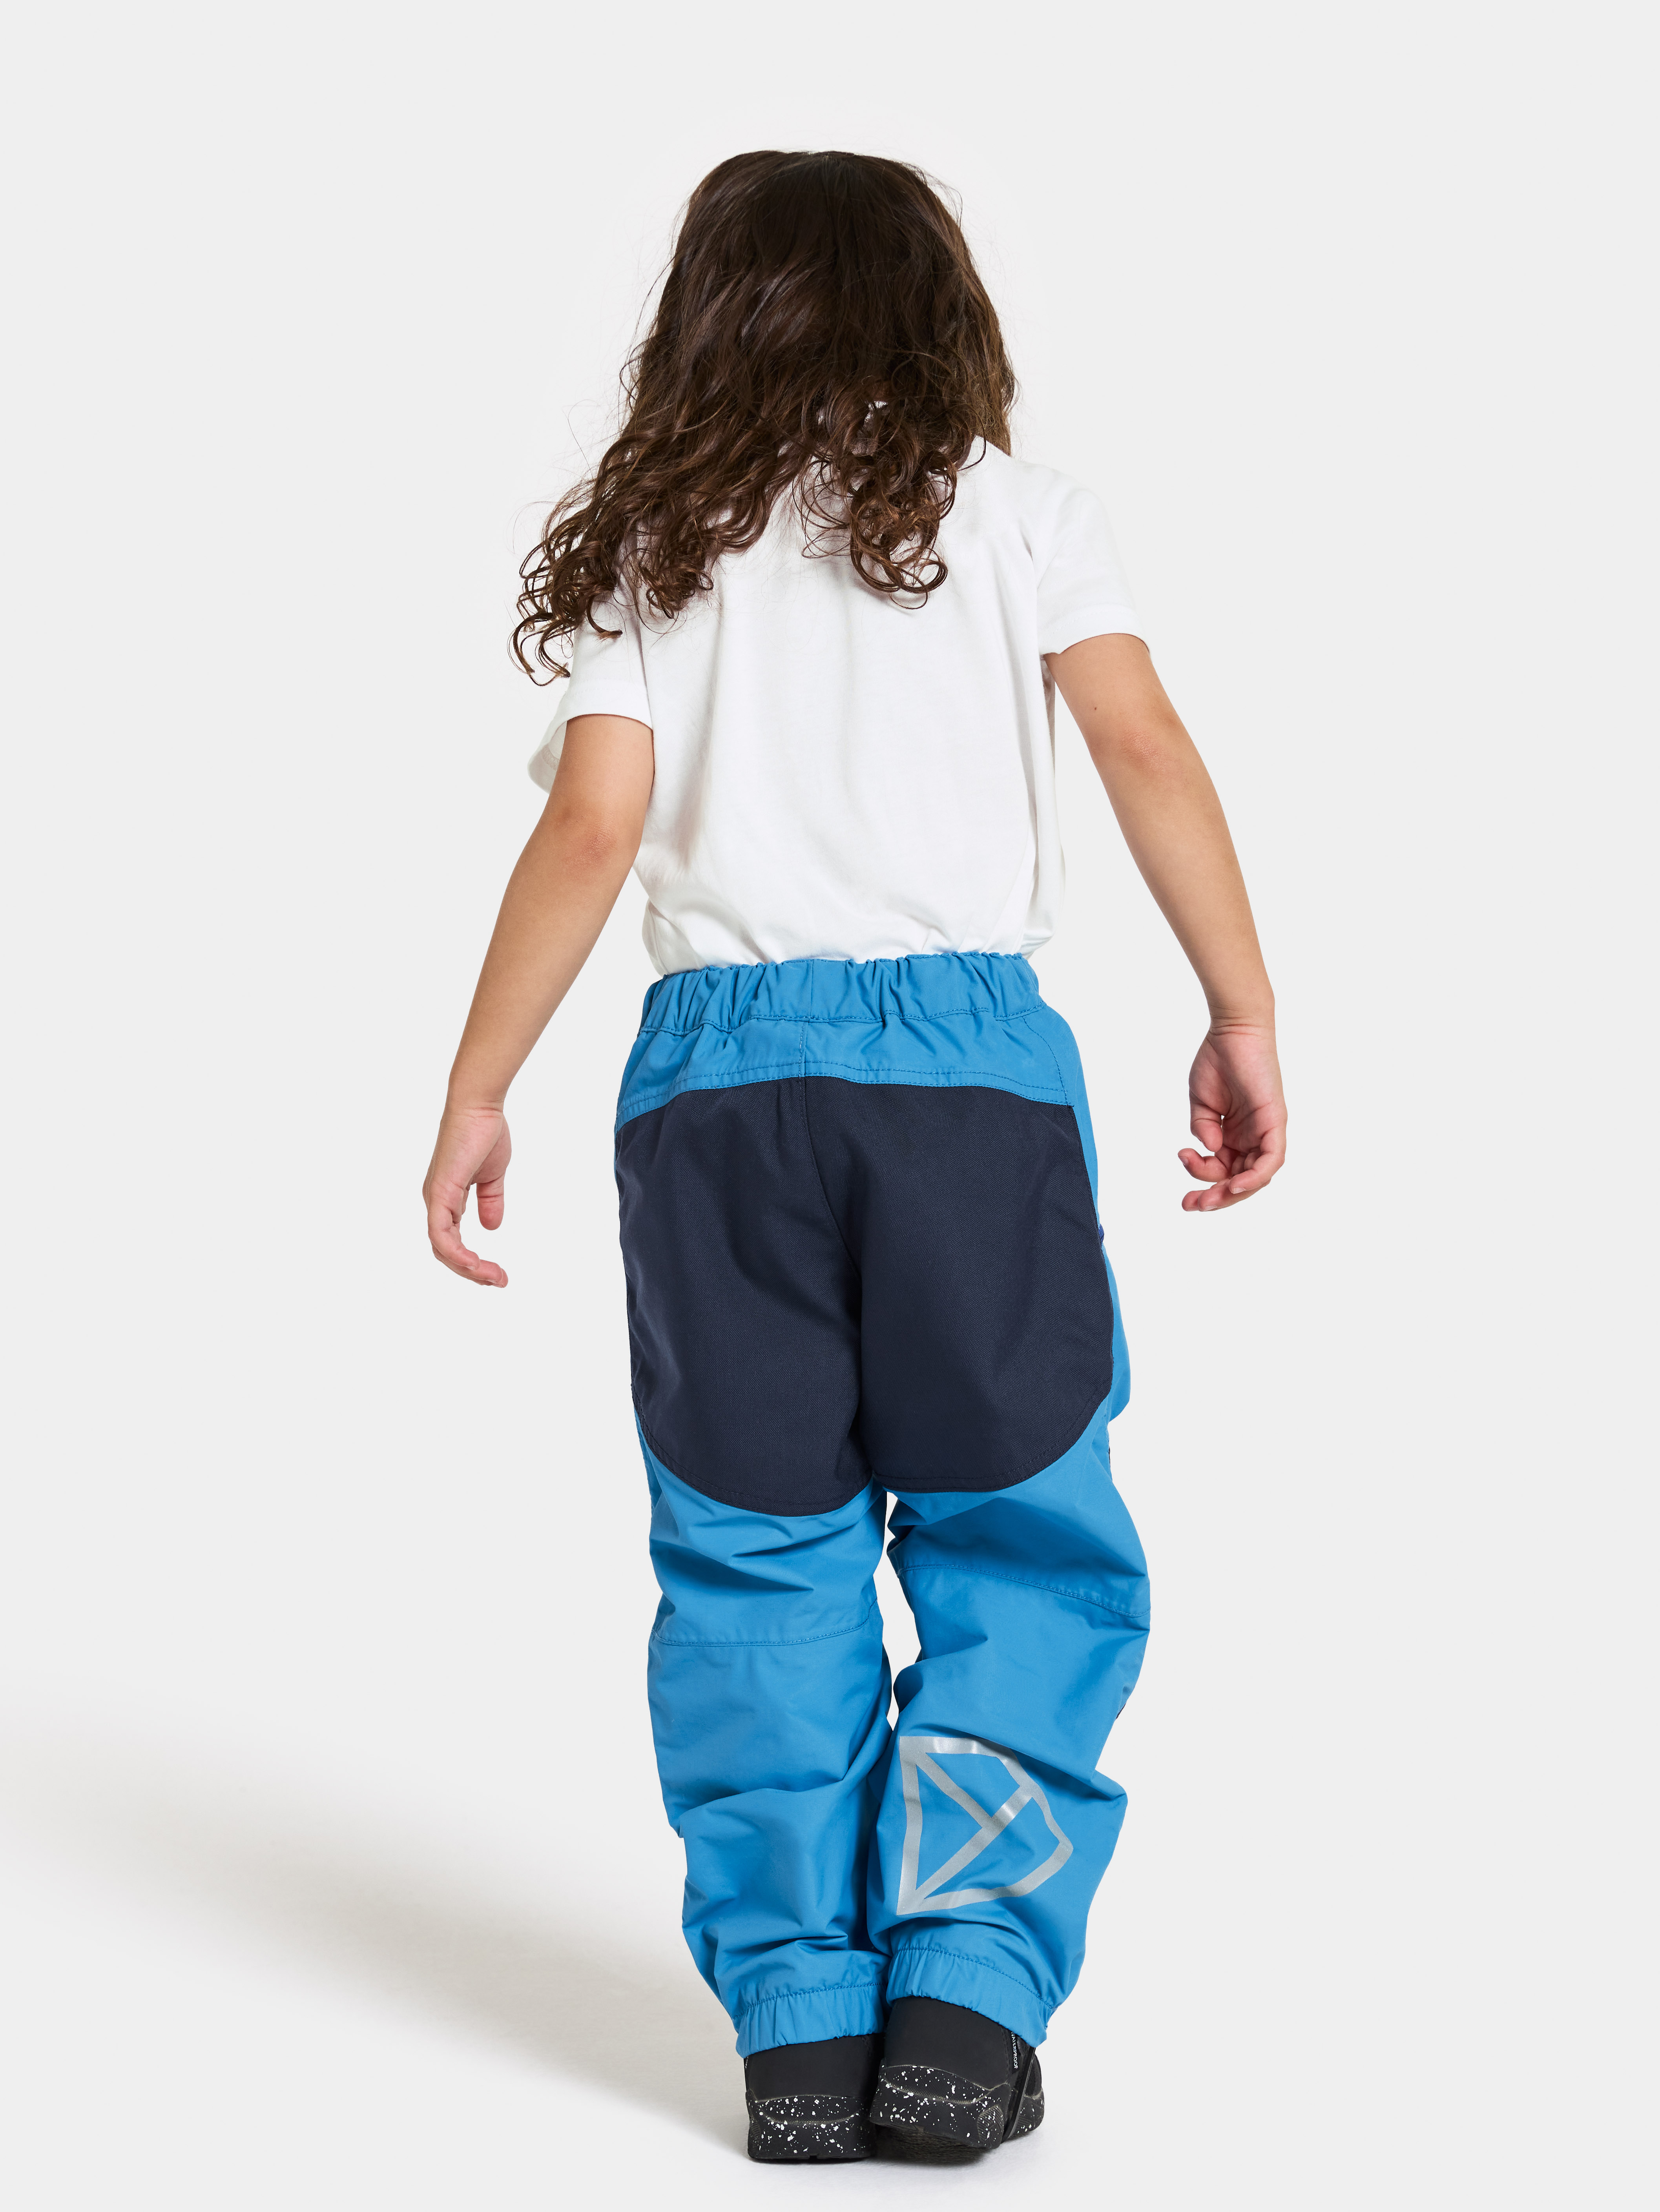 Waterproof Pants for Kids